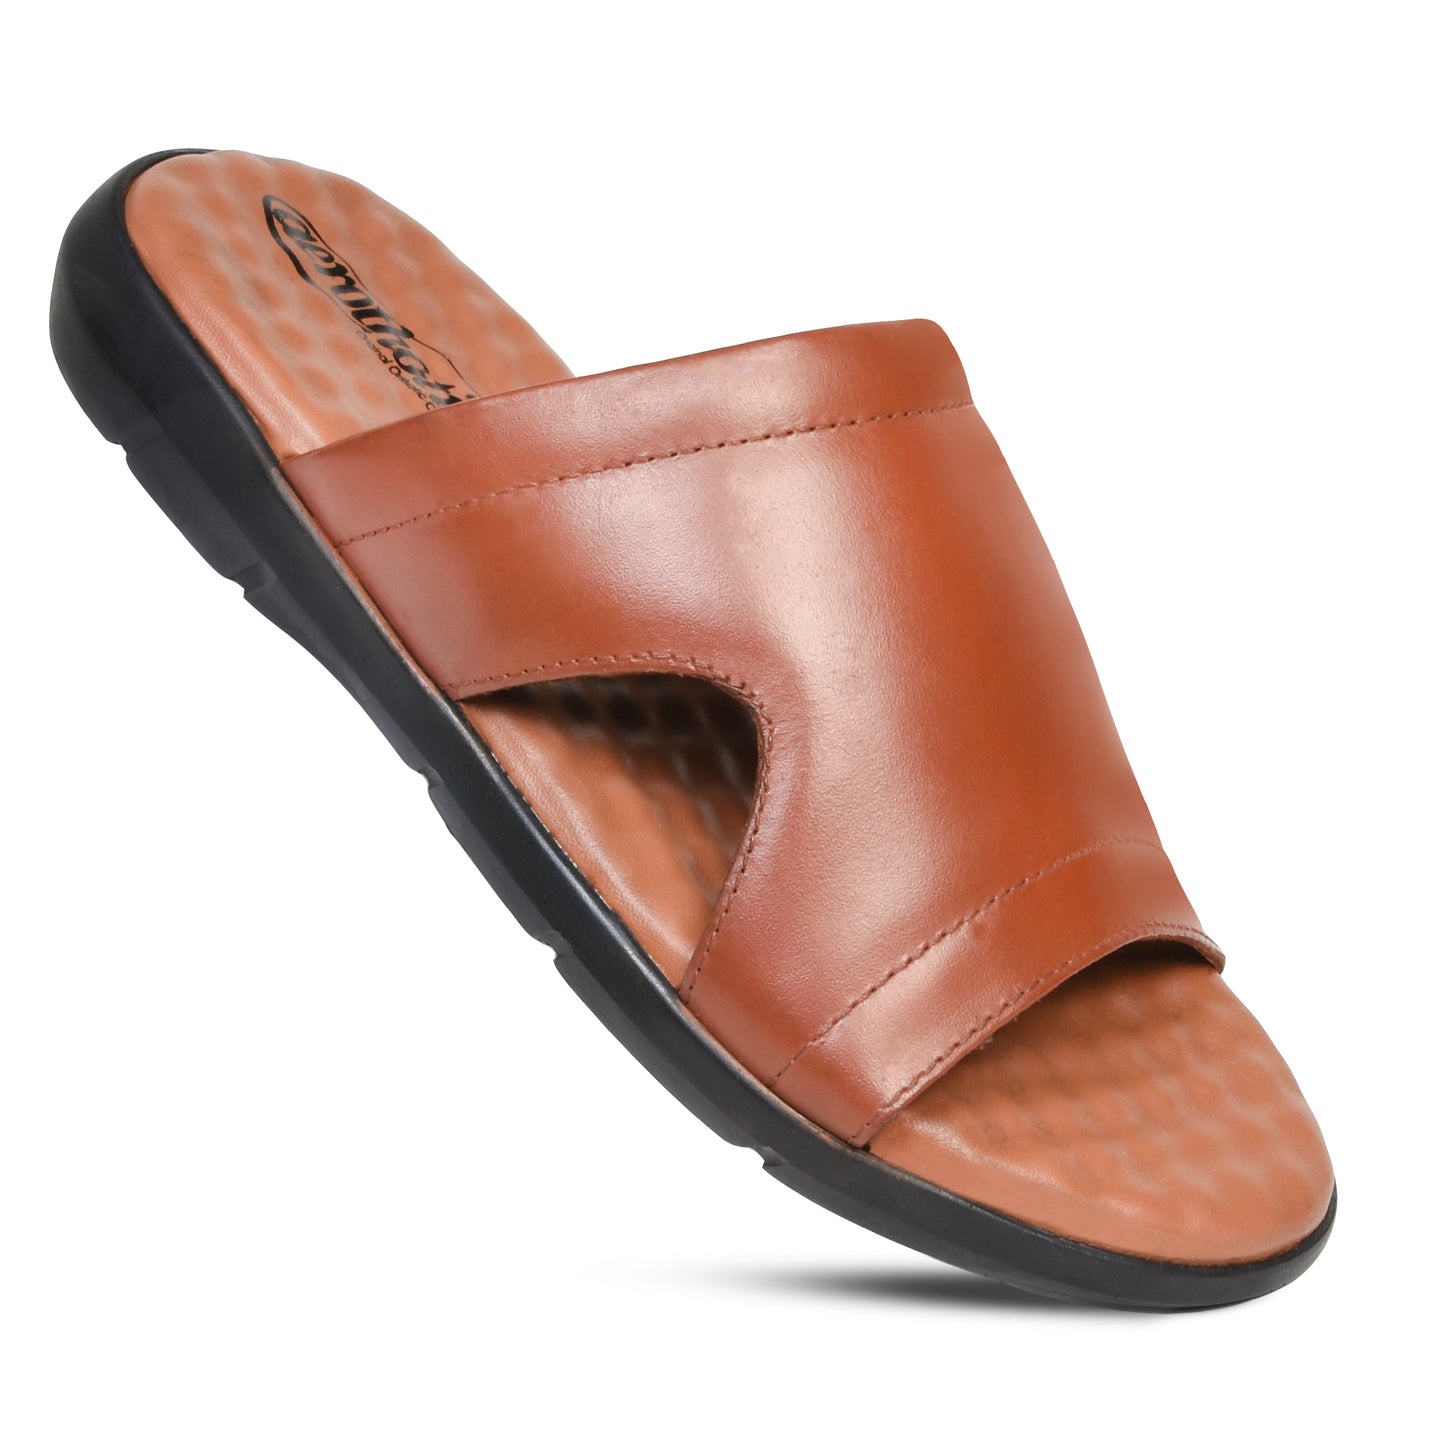 AEROTHOTIC Terrance Men's Cushion Comfort Original Leather Slide Sandals– Original Thailand Imported – M2206